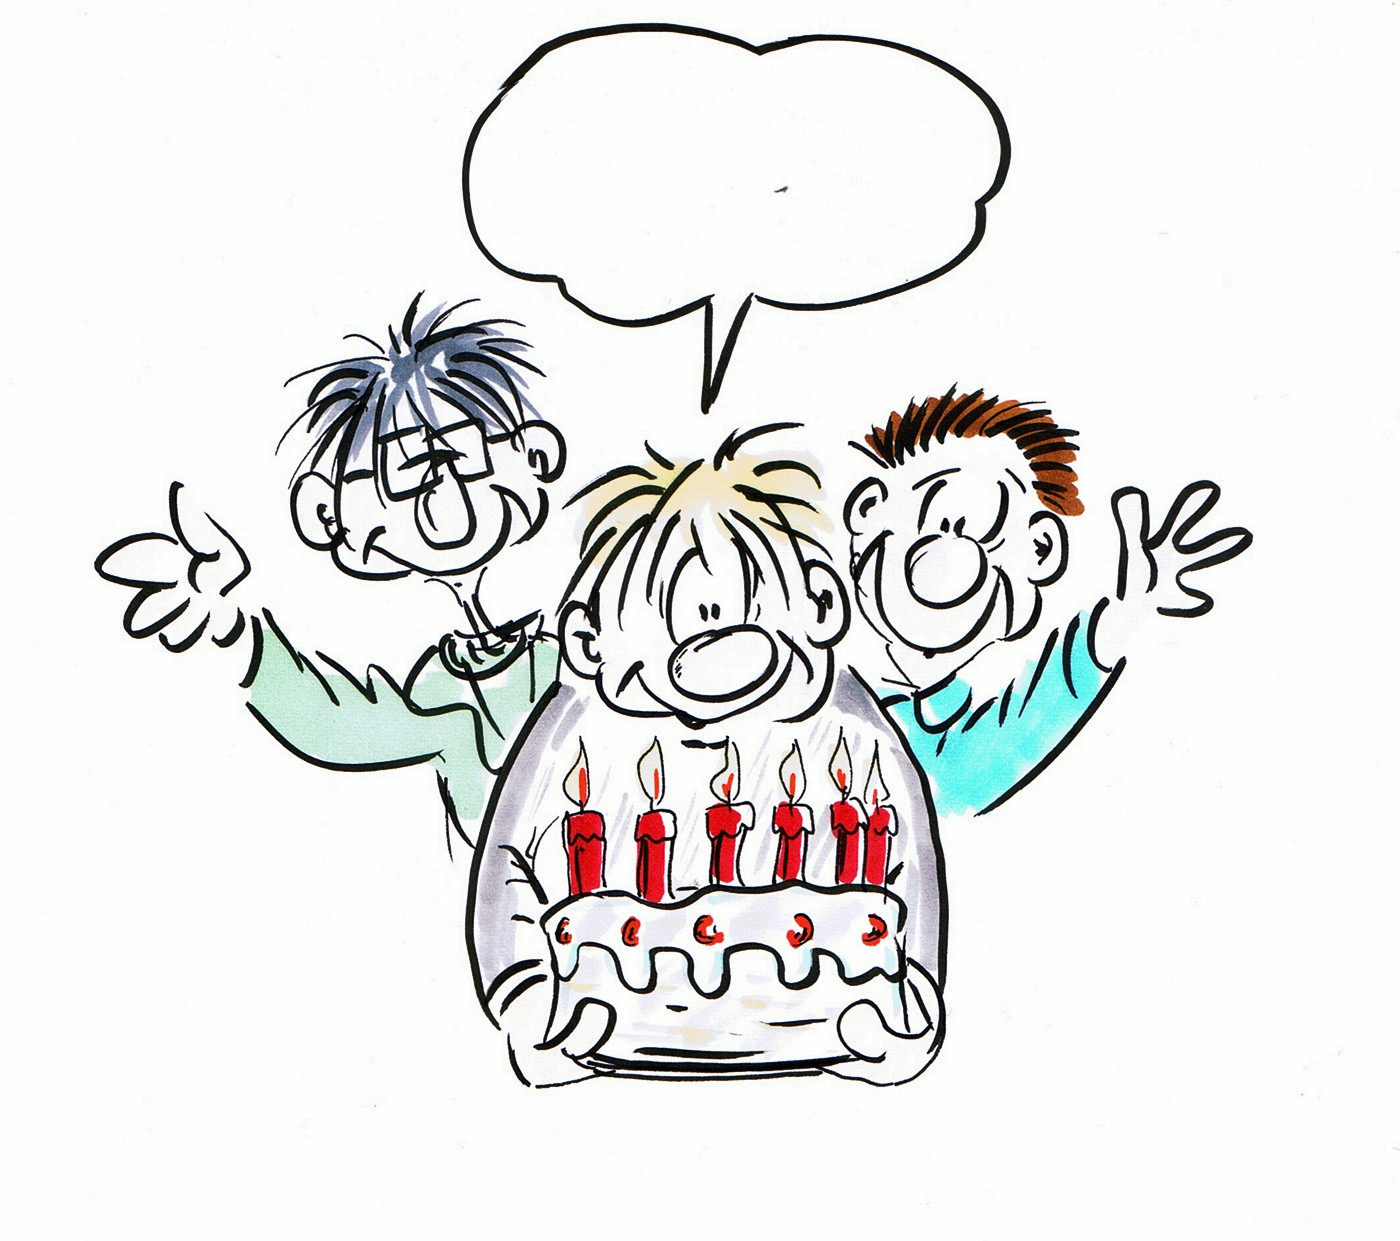 Lustige Geburtstagskarten Zum Ausdrucken
 Geburtstagskarte lustig nett und zum ausdrucken